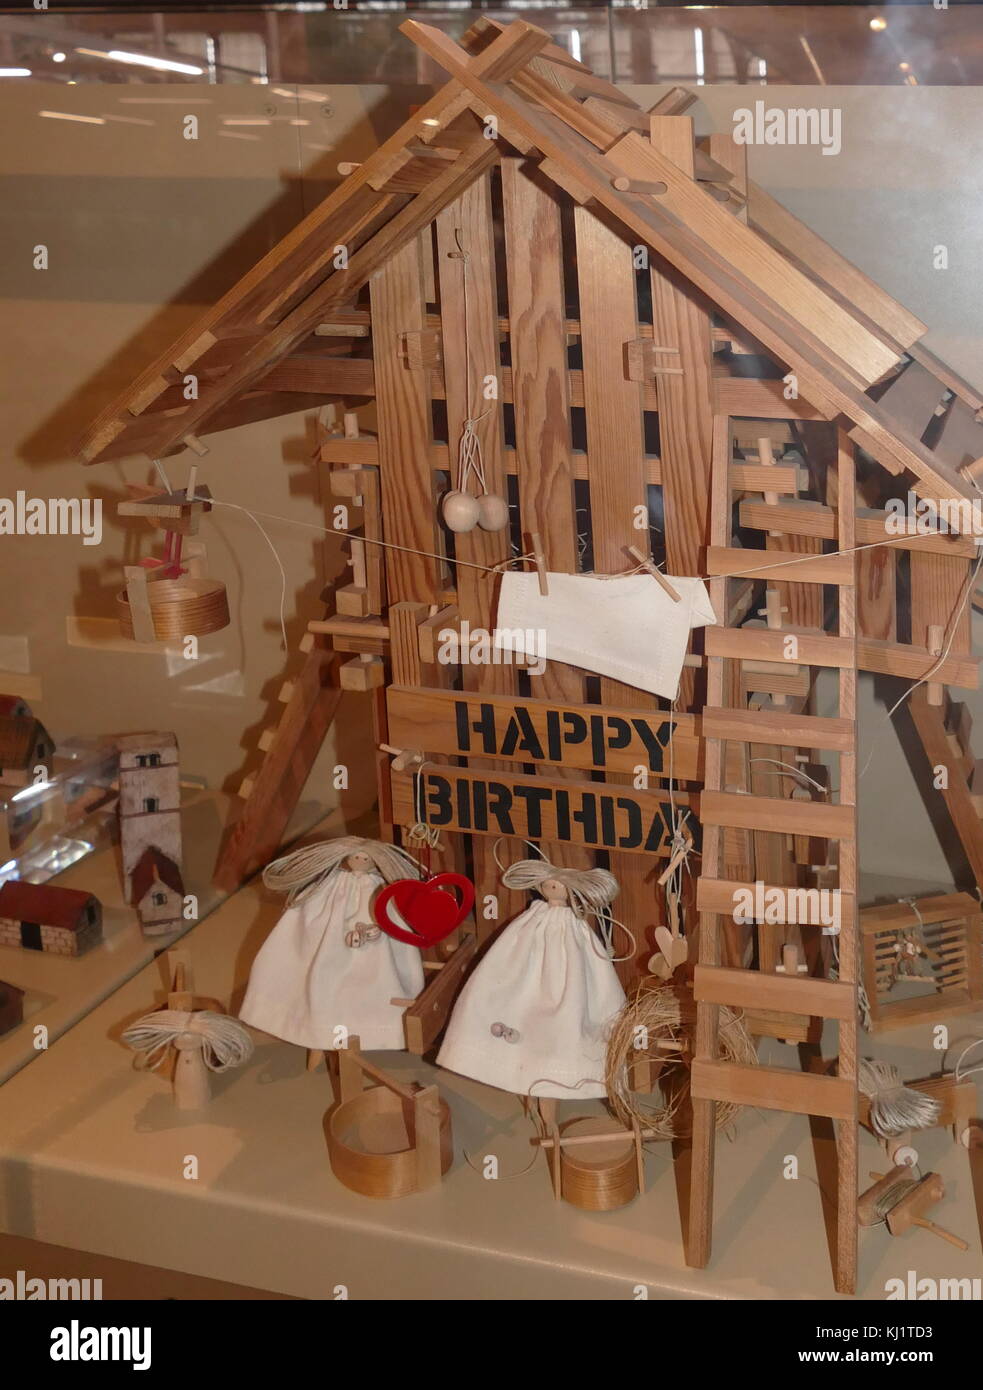 "Buon Compleanno" Casa, 1979. Casa delle bambole da artista britannico, Jane Blyth. Esso contiene una scatola musicale in soffitta che gioca "Tanti auguri a te"."Buon Compleanno" Casa, 1979. Casa delle bambole da artista britannico, Jane Blyth. Esso contiene una scatola musicale in soffitta che gioca "Tanti auguri a te"."Buon Compleanno" Casa, 1979. Casa delle bambole da artista britannico, Jane Blyth. Esso contiene una scatola musicale in soffitta che gioca "Tanti auguri a te"."Buon Compleanno" Casa, 1979. Casa delle bambole da artista britannico, Jane Blyth. Esso contiene una scatola musicale in soffitta che gioca "Tanti auguri a te"."Felice B Foto Stock